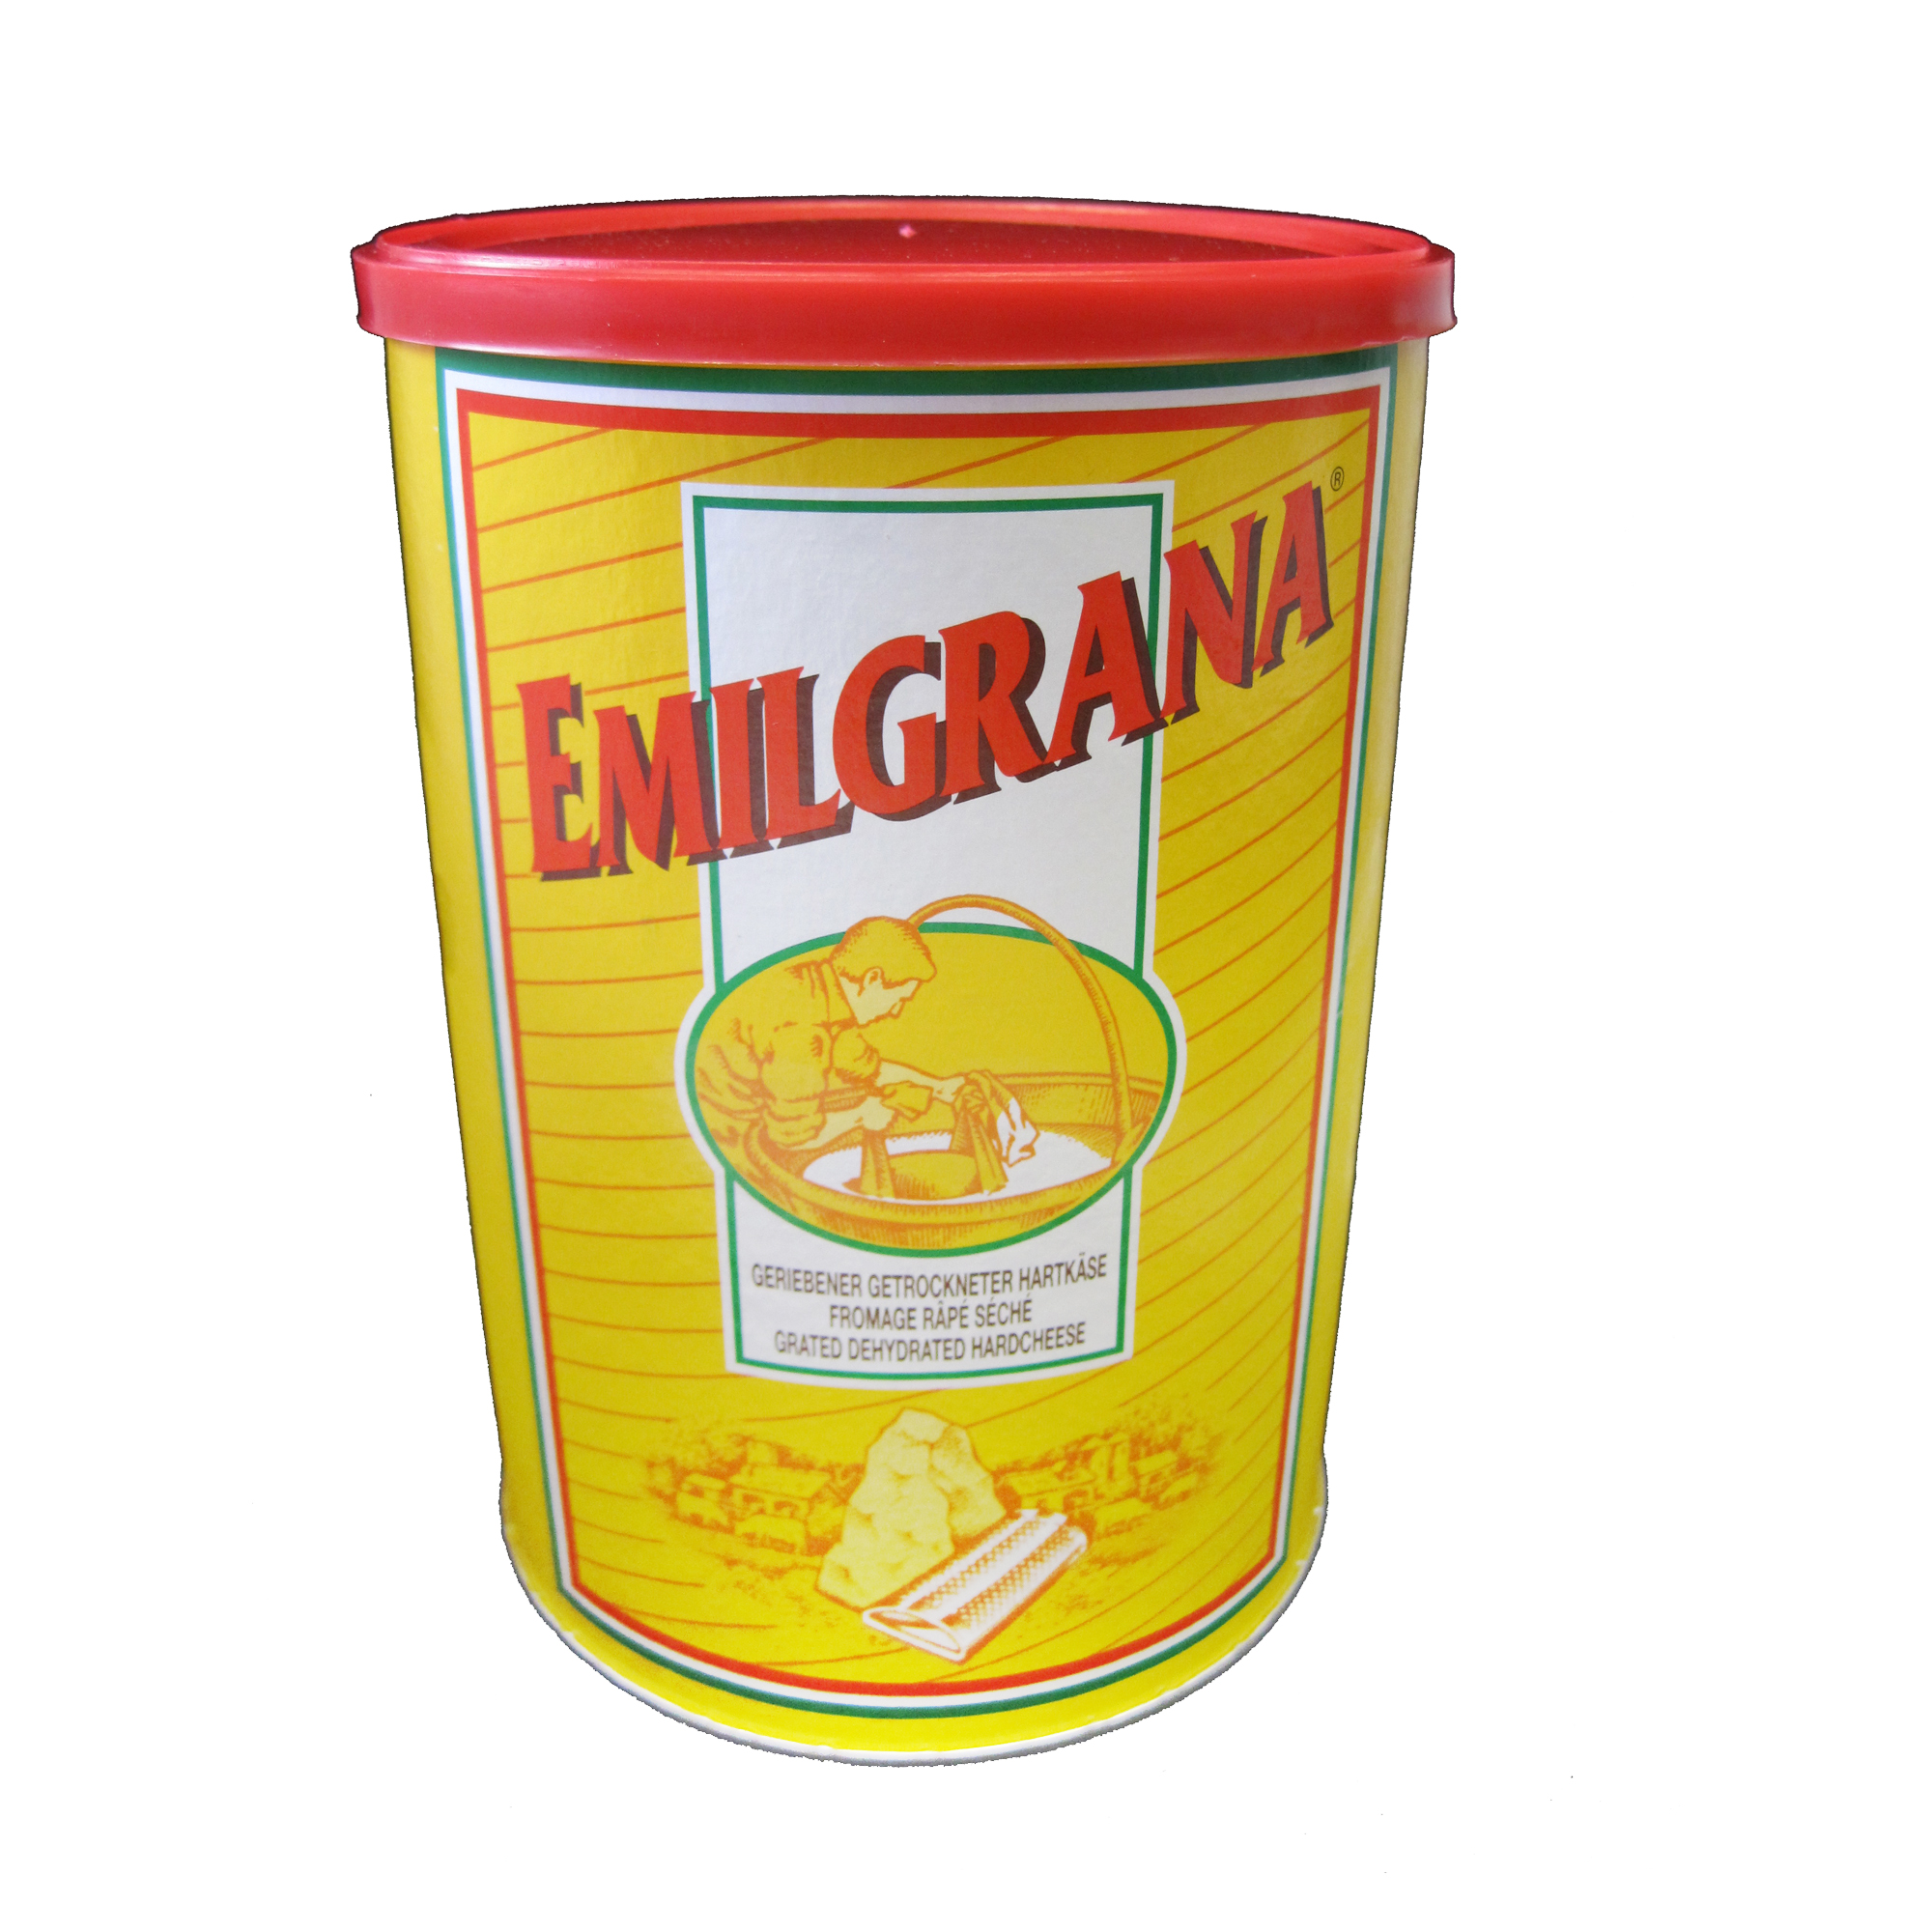 Emilgrana | Hartkäse gerieben 500 g